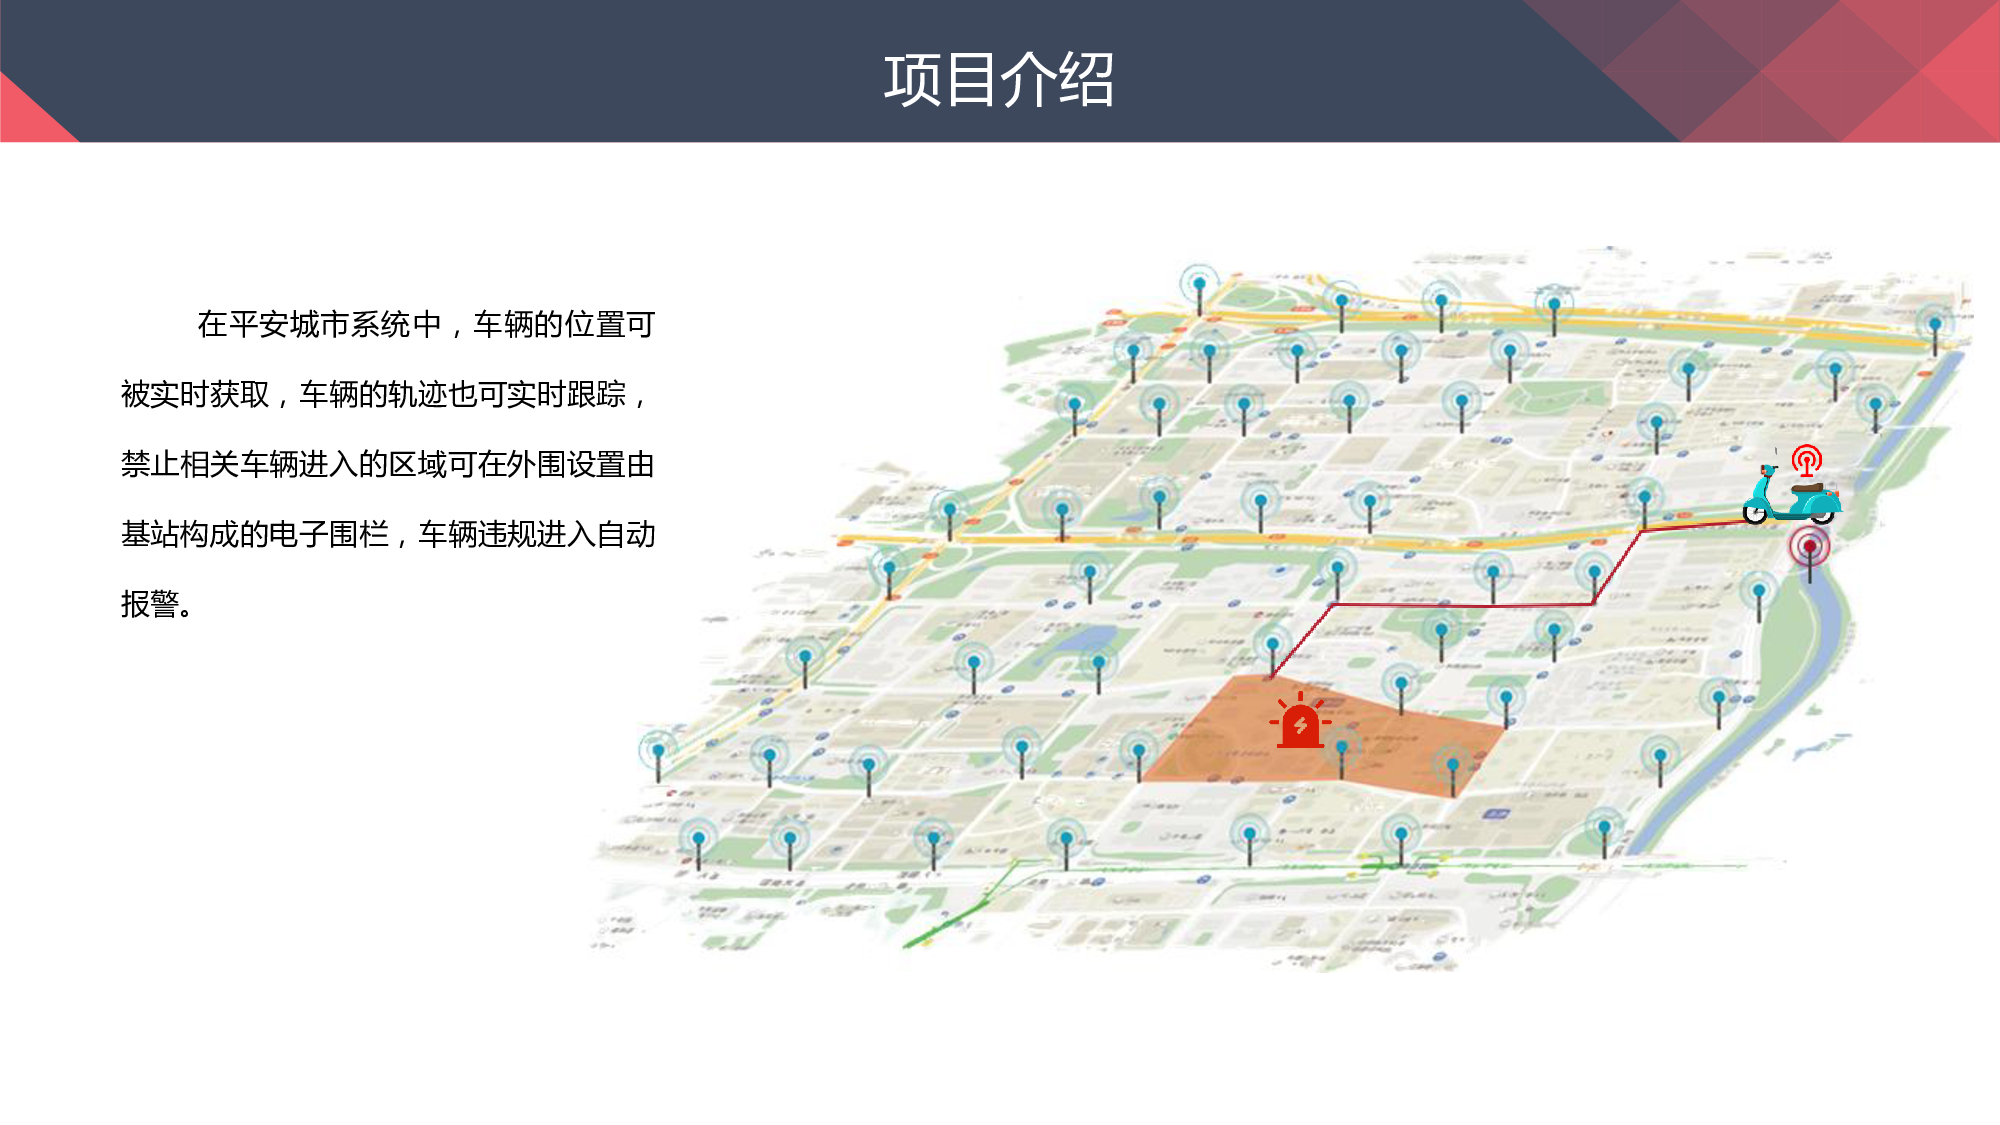 城市RFID物联网综合管理方案2020图片